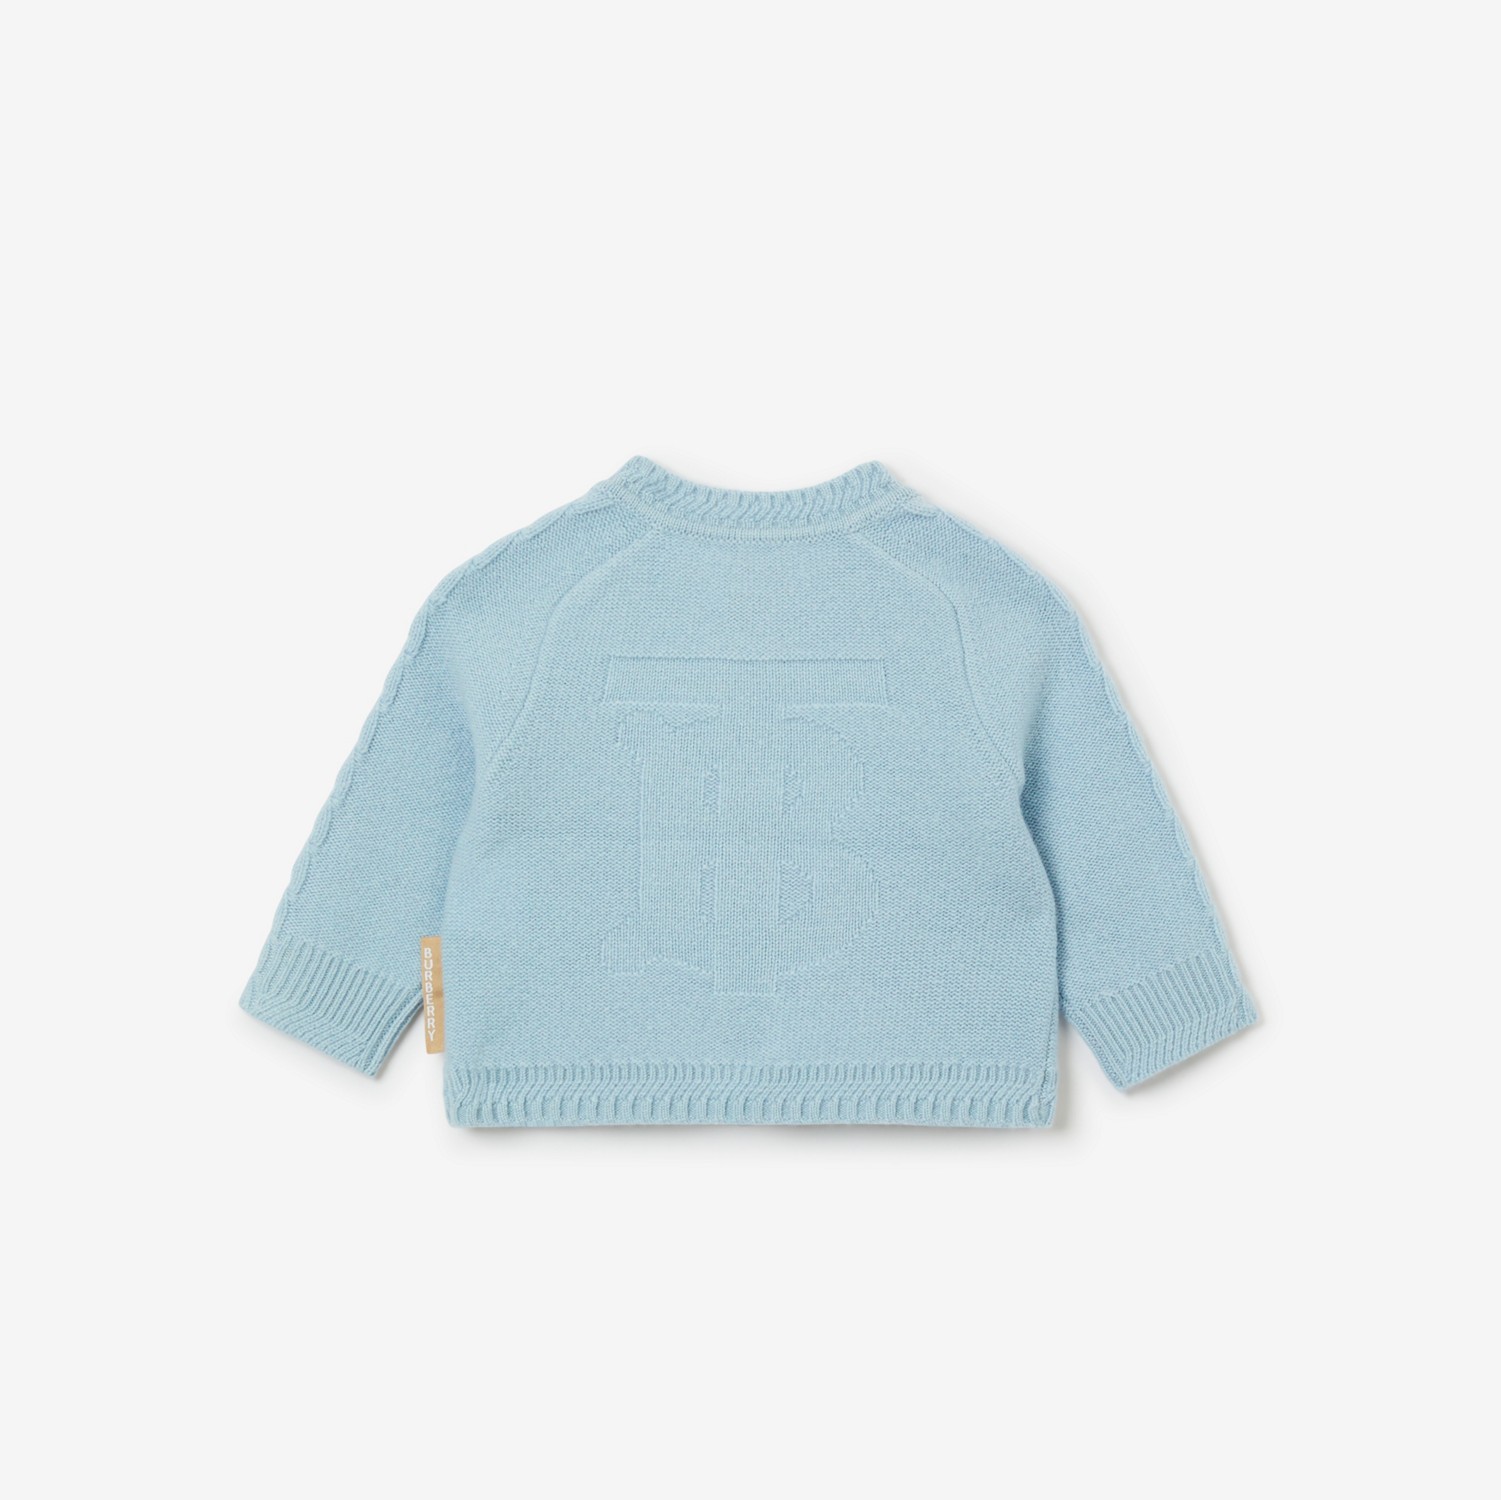 羊绒三件套婴儿礼品套装 (浅蓝色) - 儿童 | Burberry® 博柏利官网